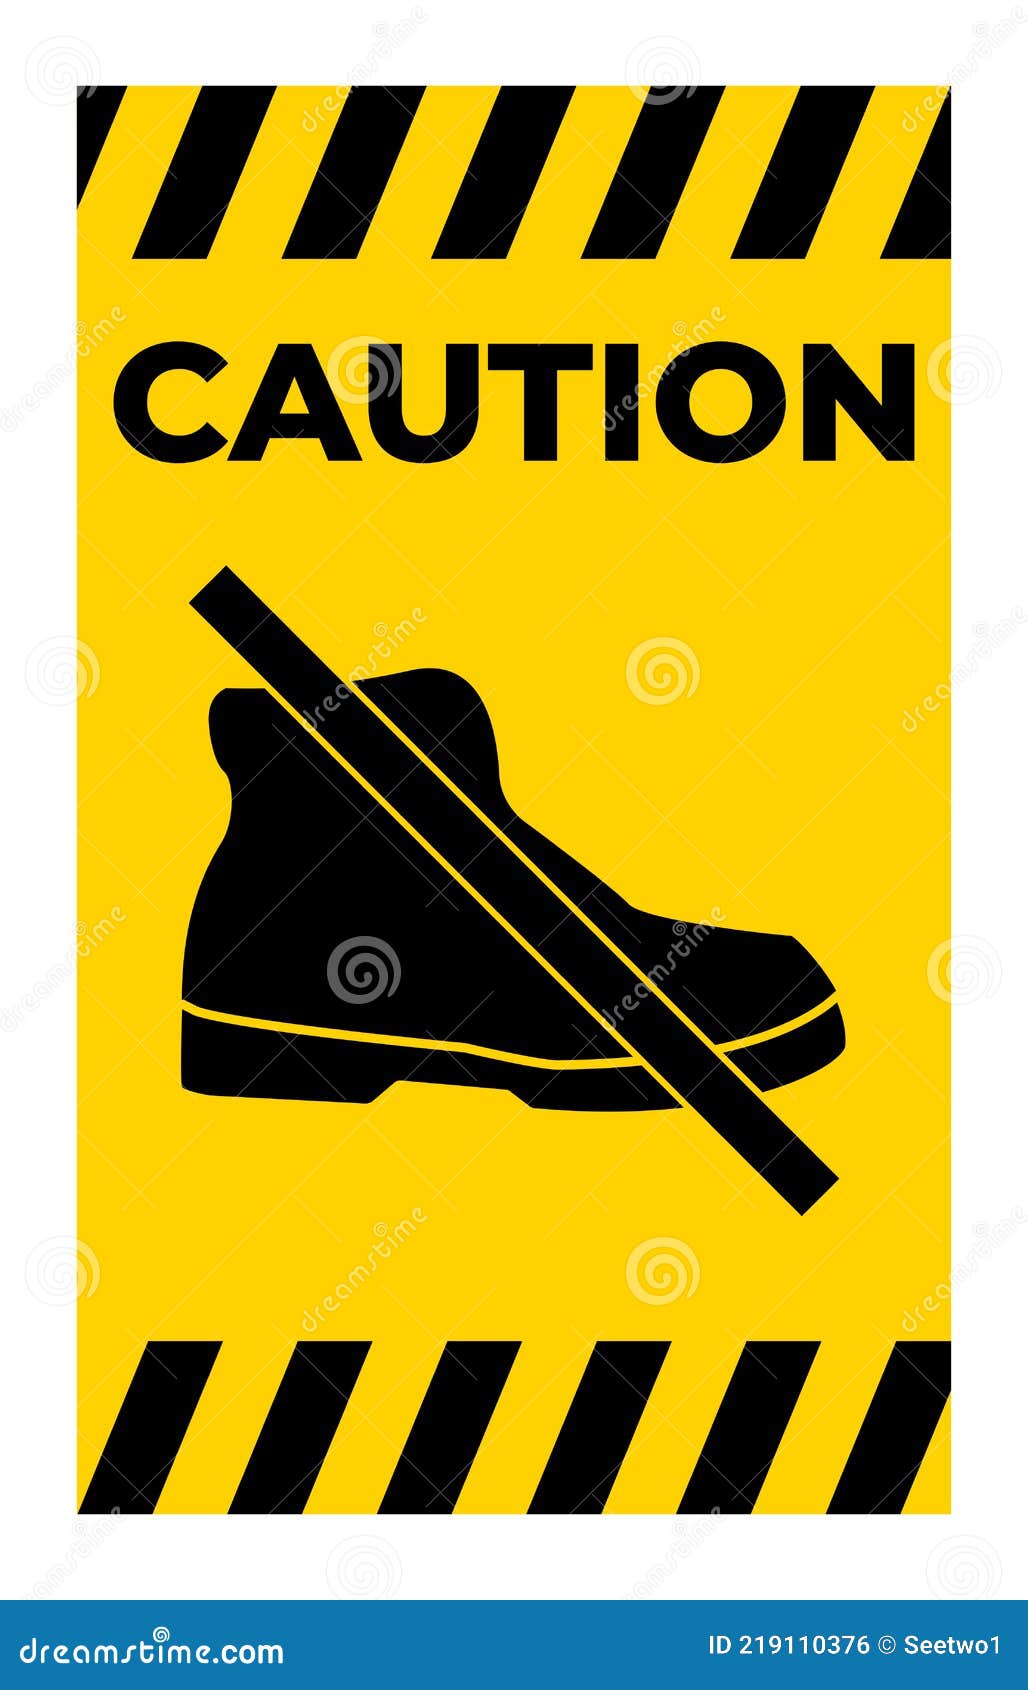 veuillez enlever vos chaussures de plein air ou n'entrez pas avec des  bottes 3517356 Art vectoriel chez Vecteezy